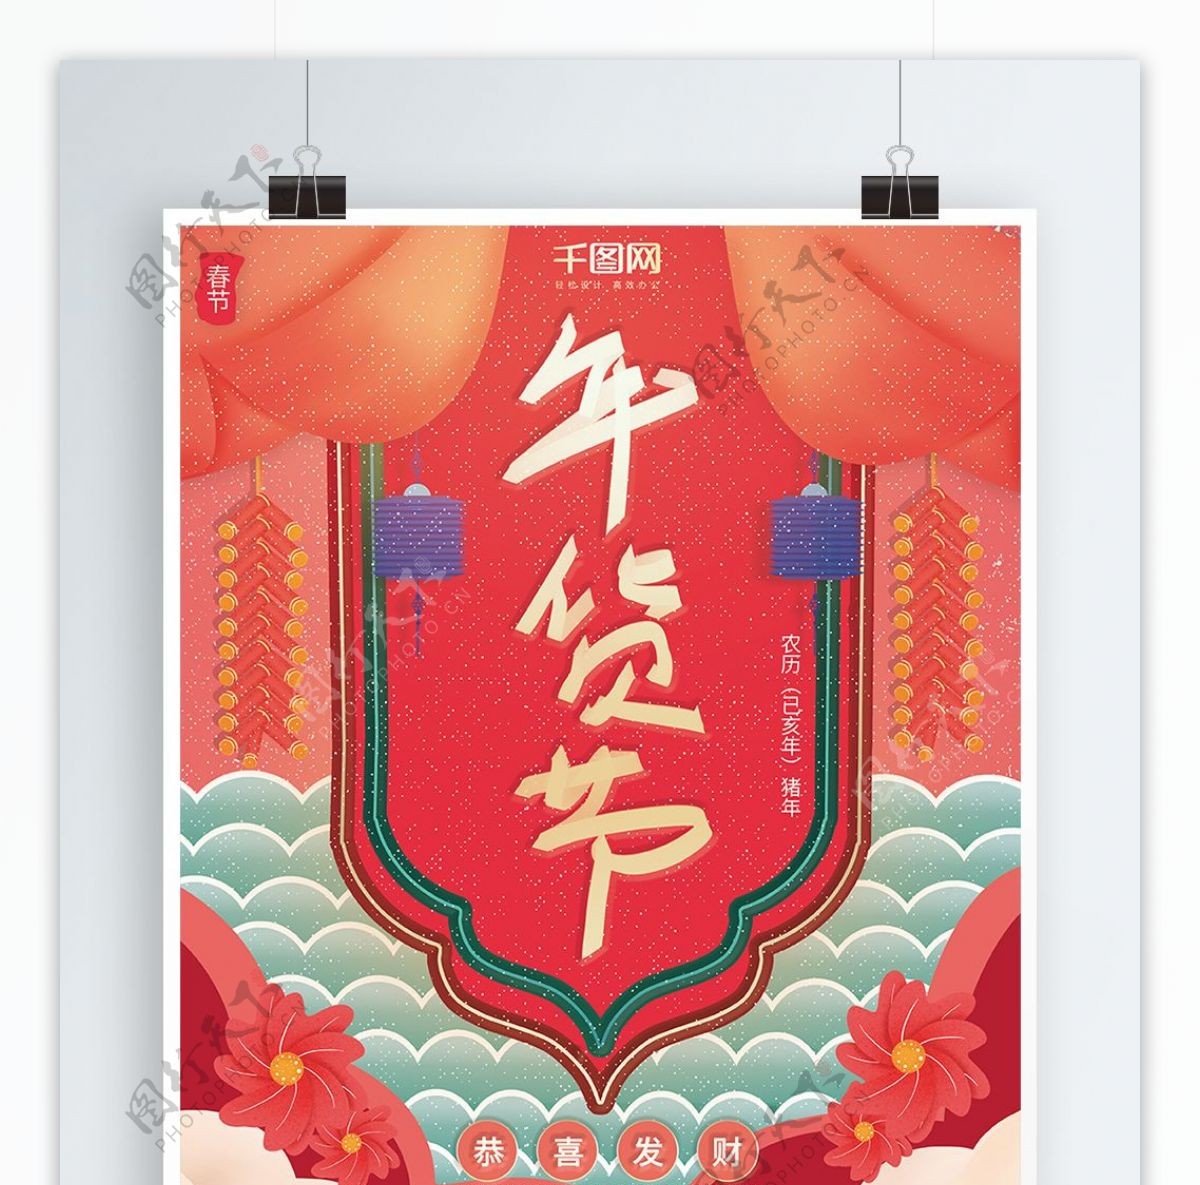 中国风大气复古传统喜庆风年货节促销海报